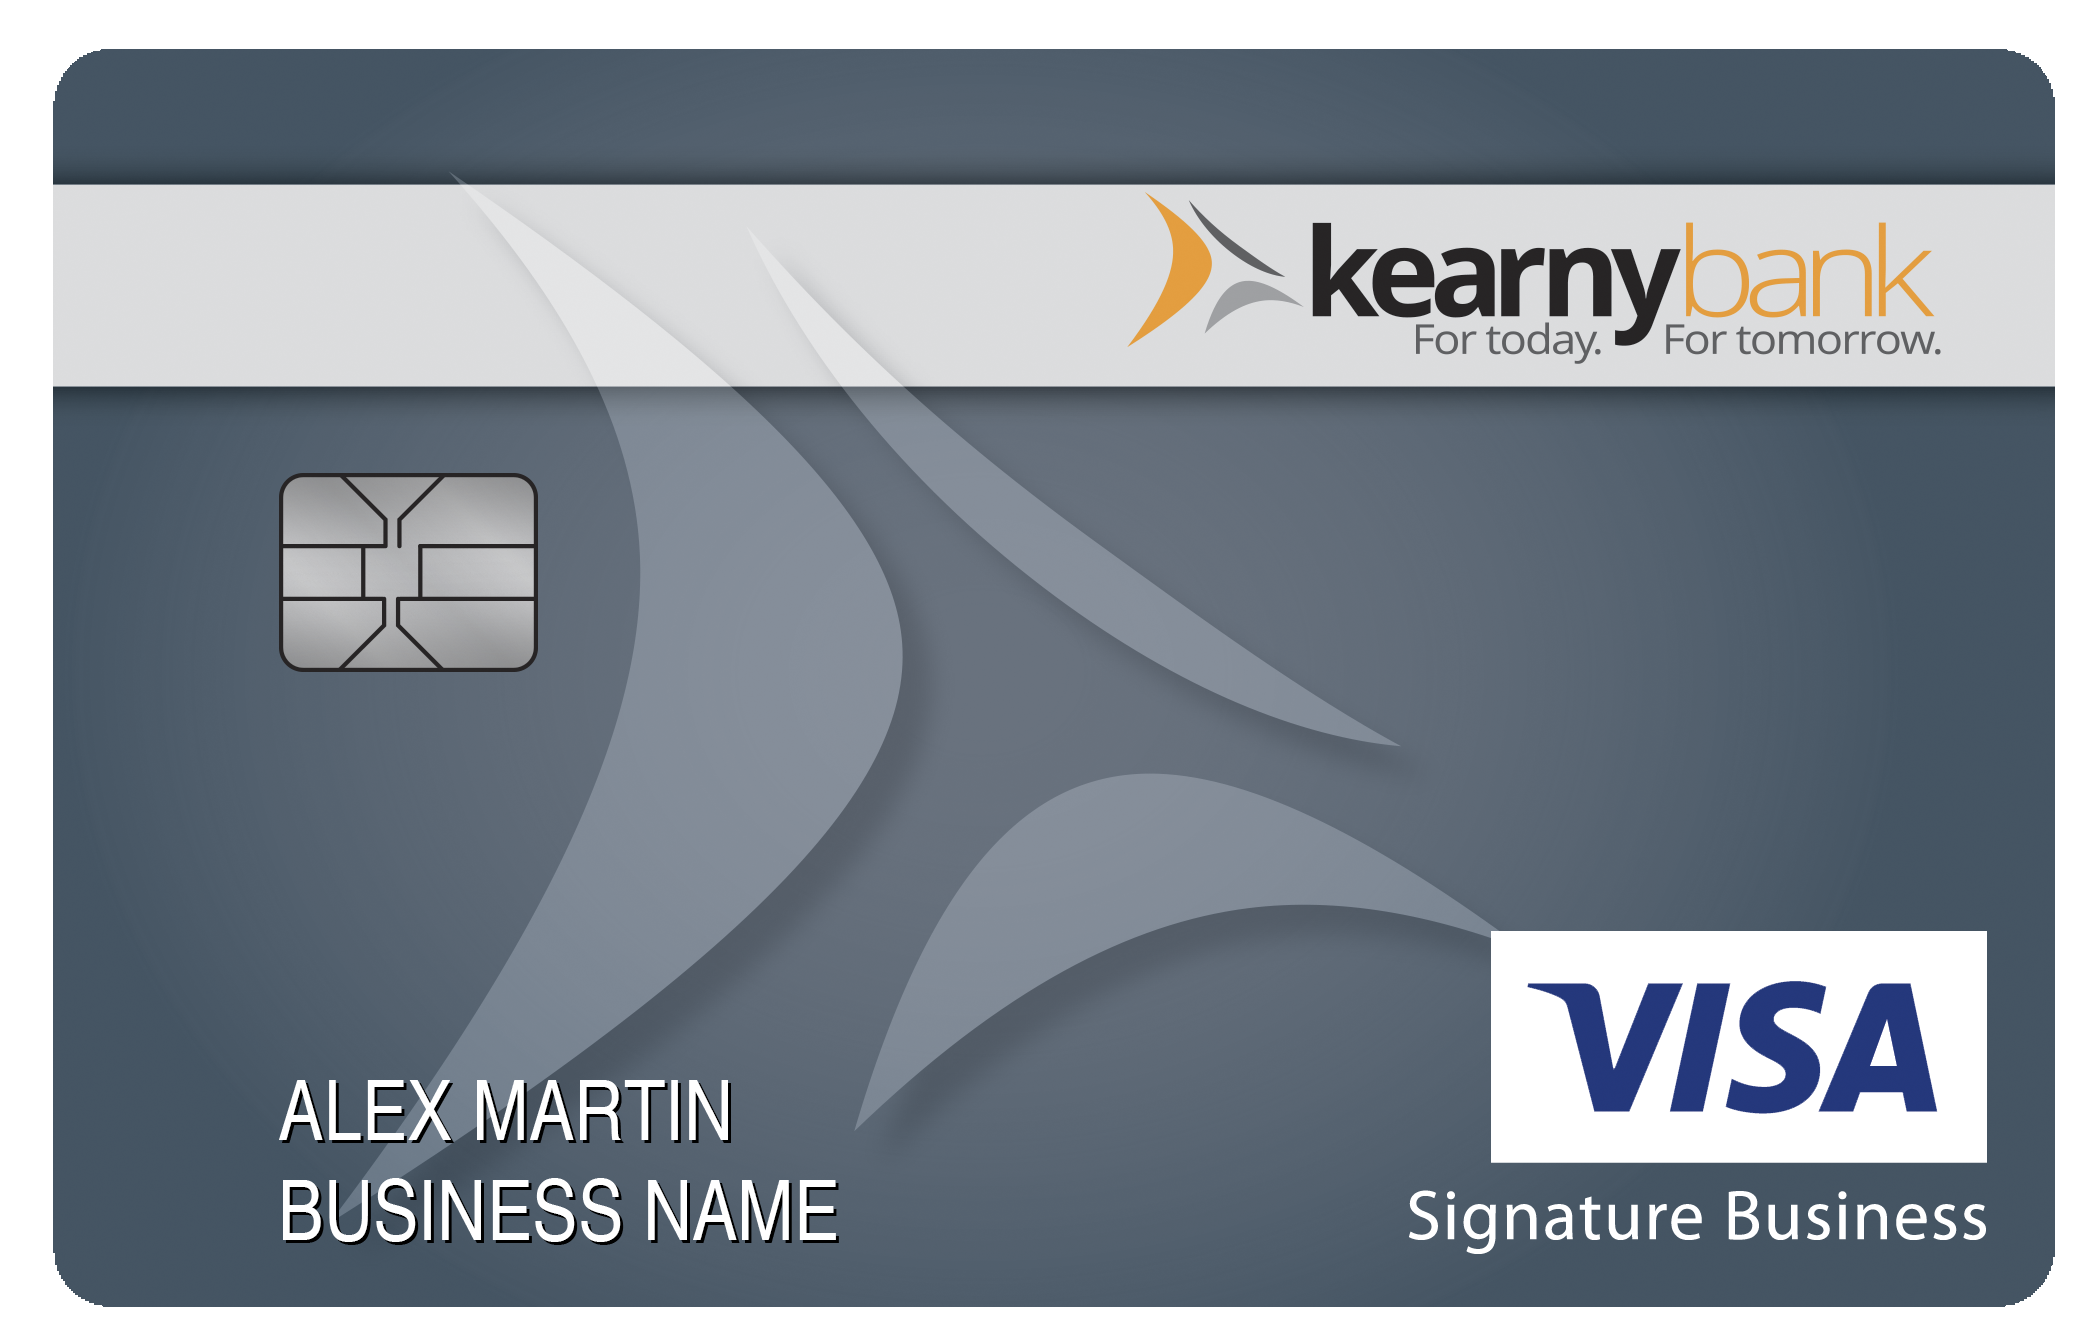 Kearny Bank Smart Business Rewards Card